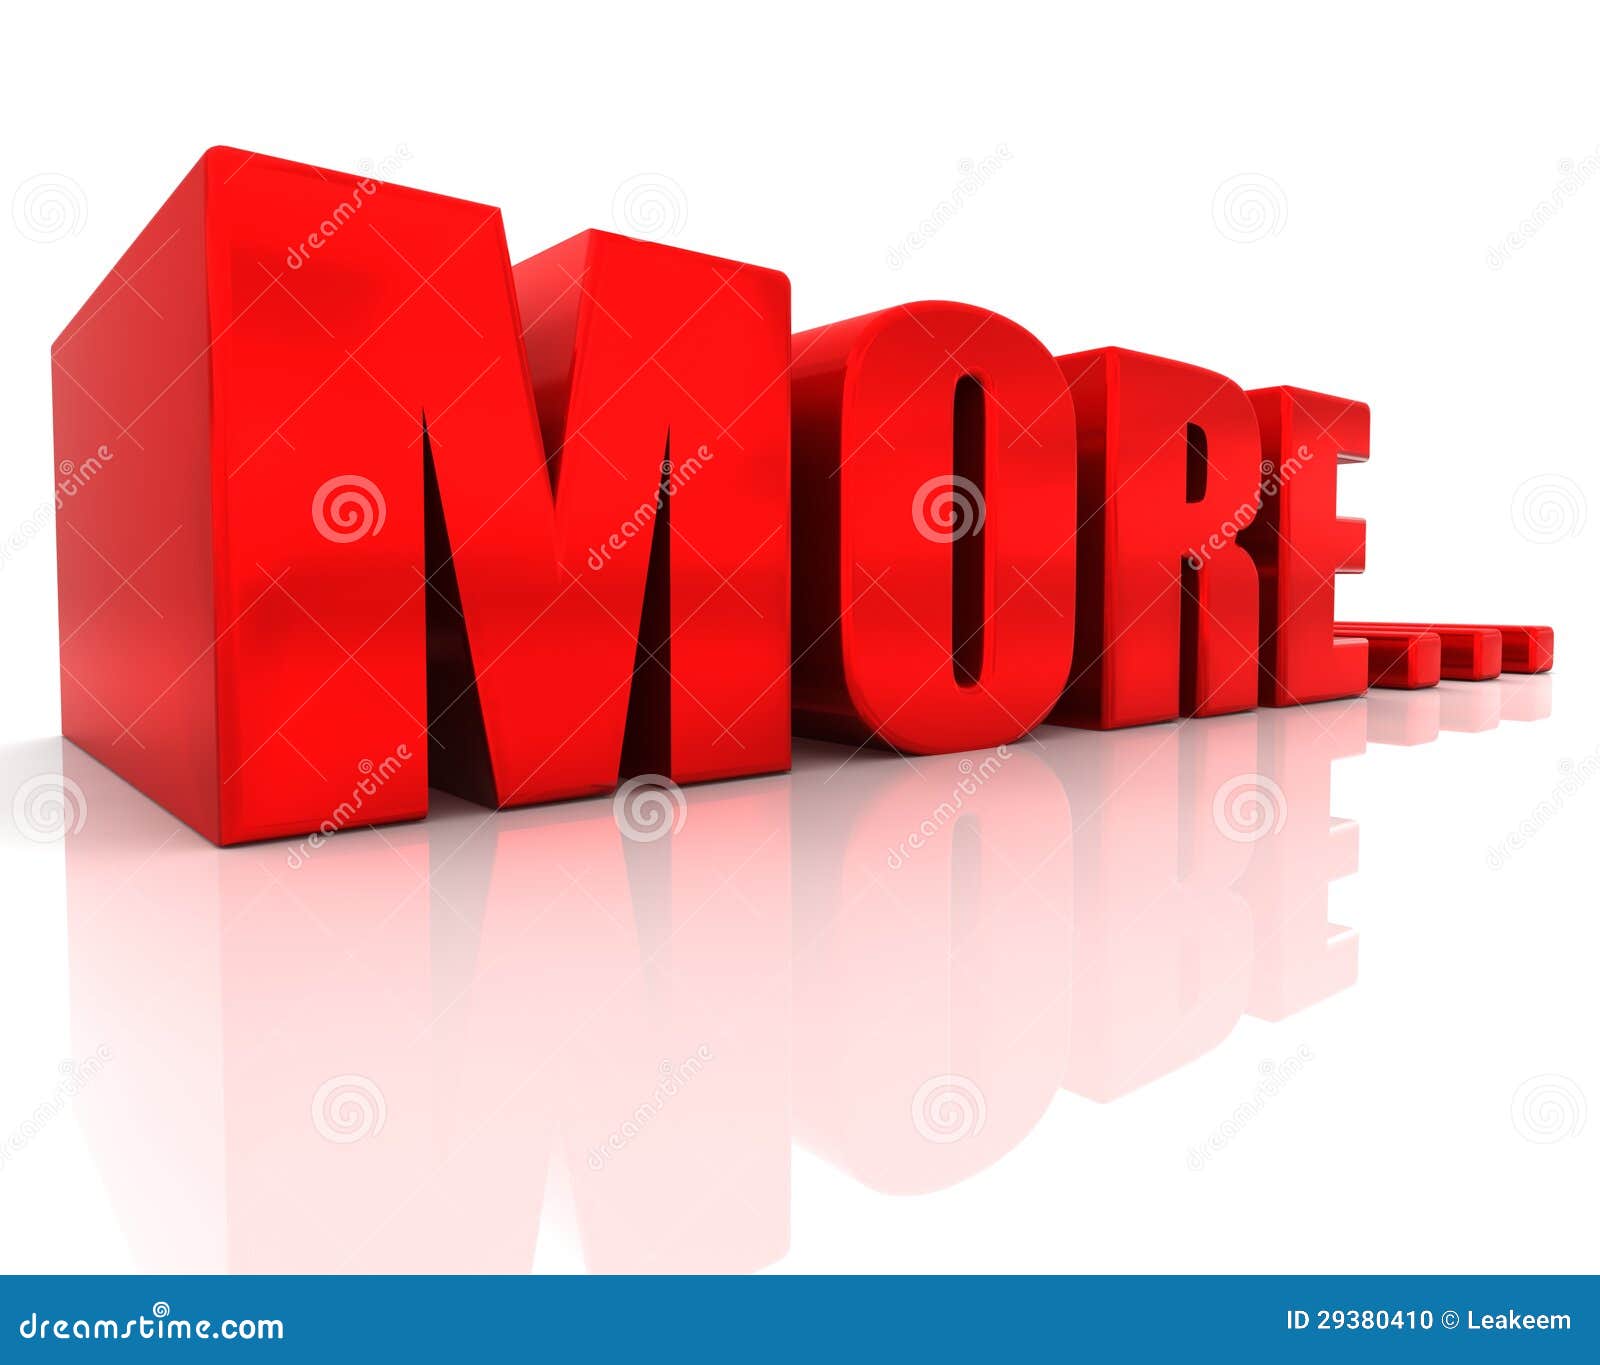 Huge red more 3d lettering stock illustration. Image of ...